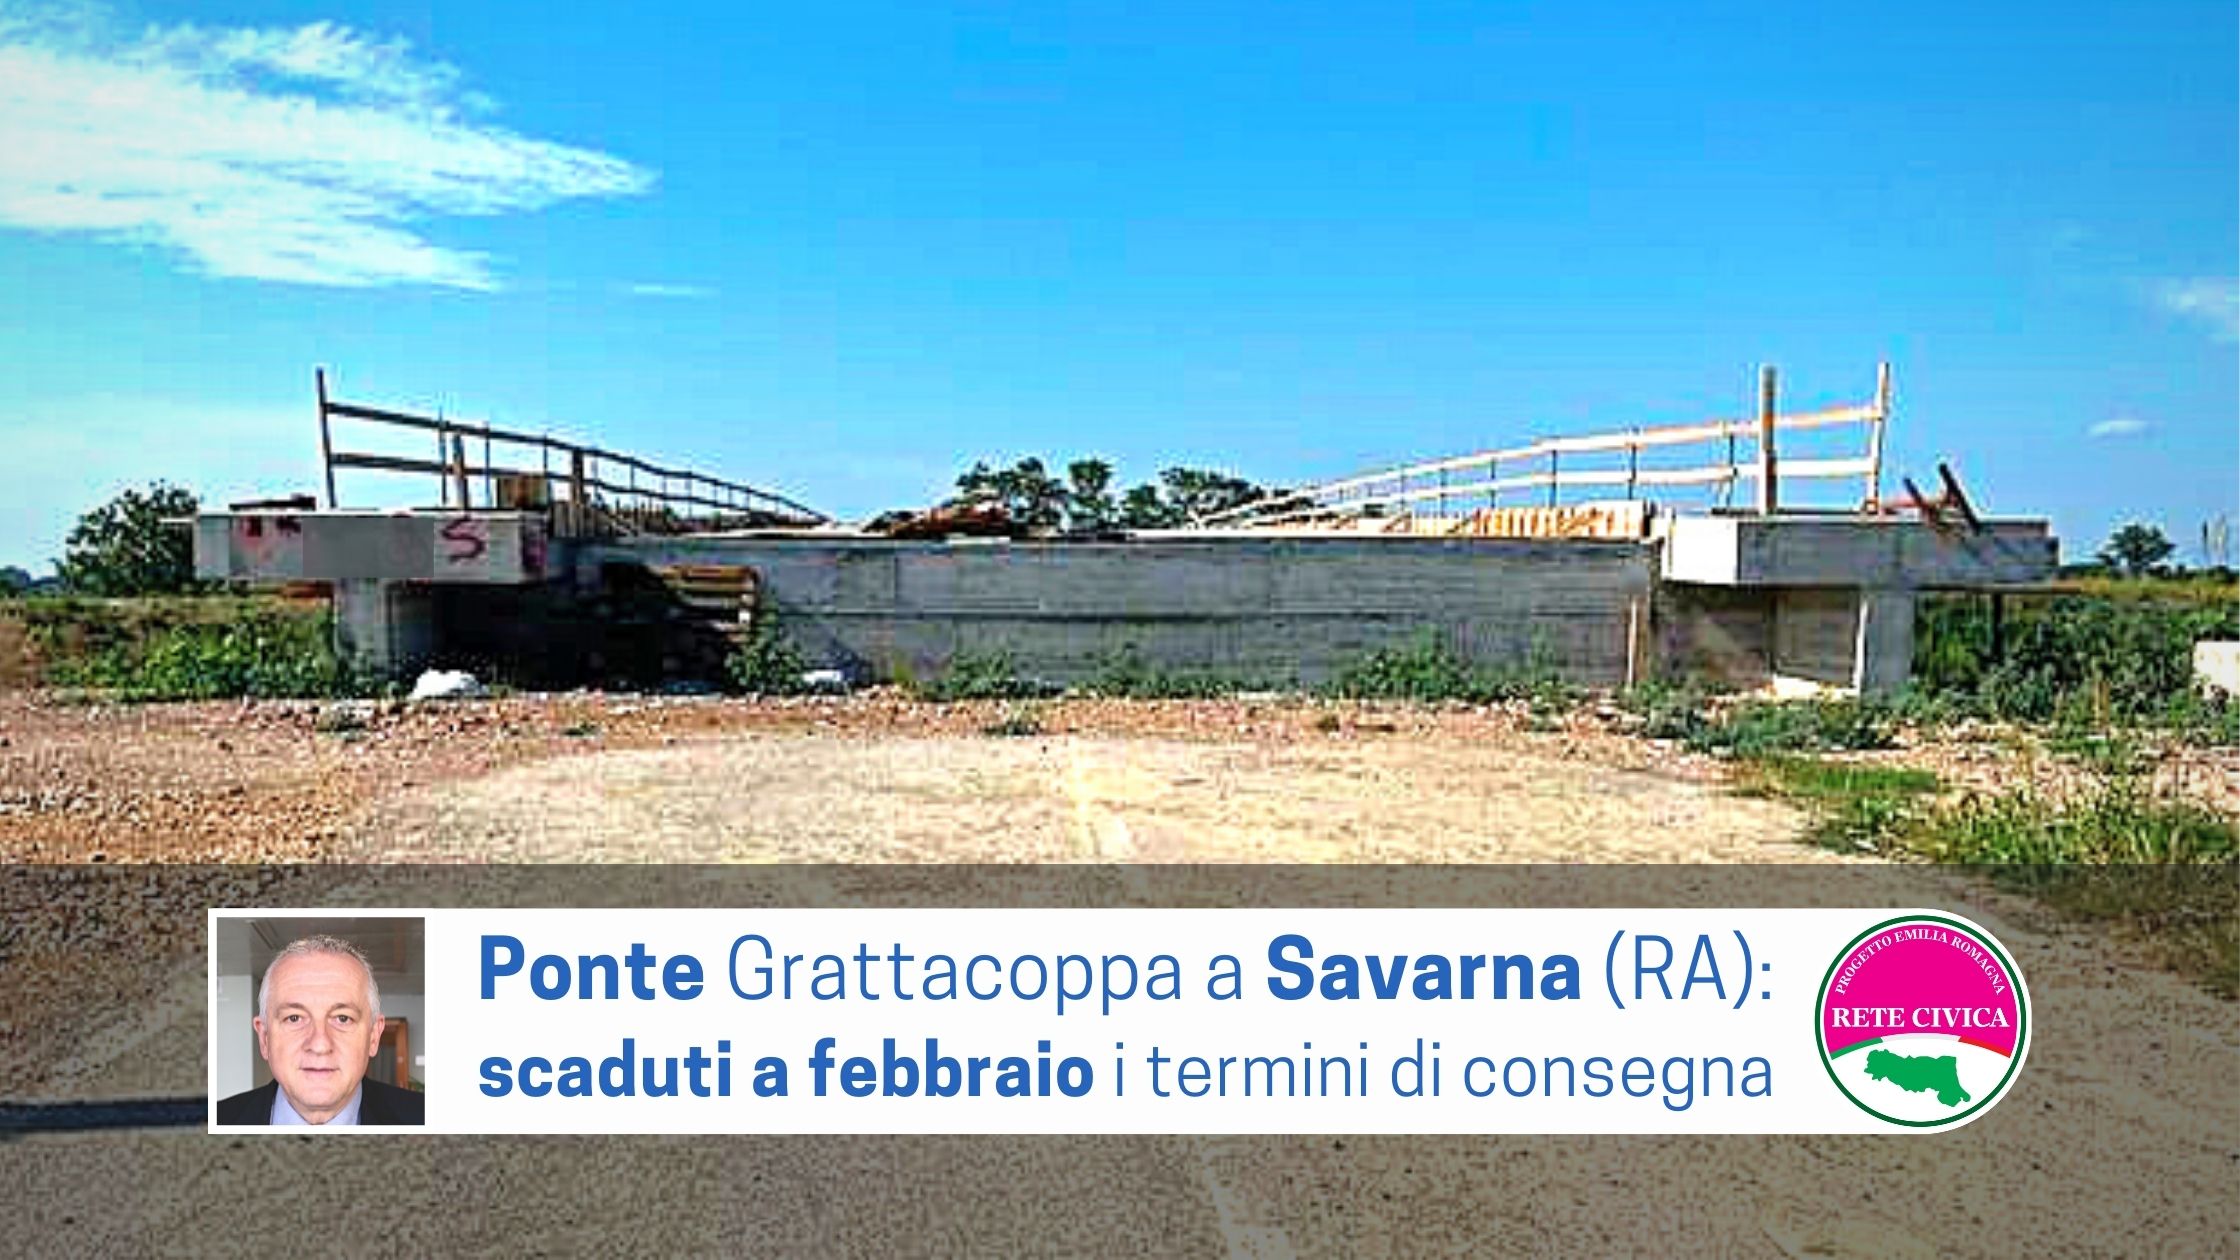 Scopri di più sull'articolo PONTE GRATTACOPPA a SAVARNA (RA): scaduti a febbraio i termini di consegna del manufatto 